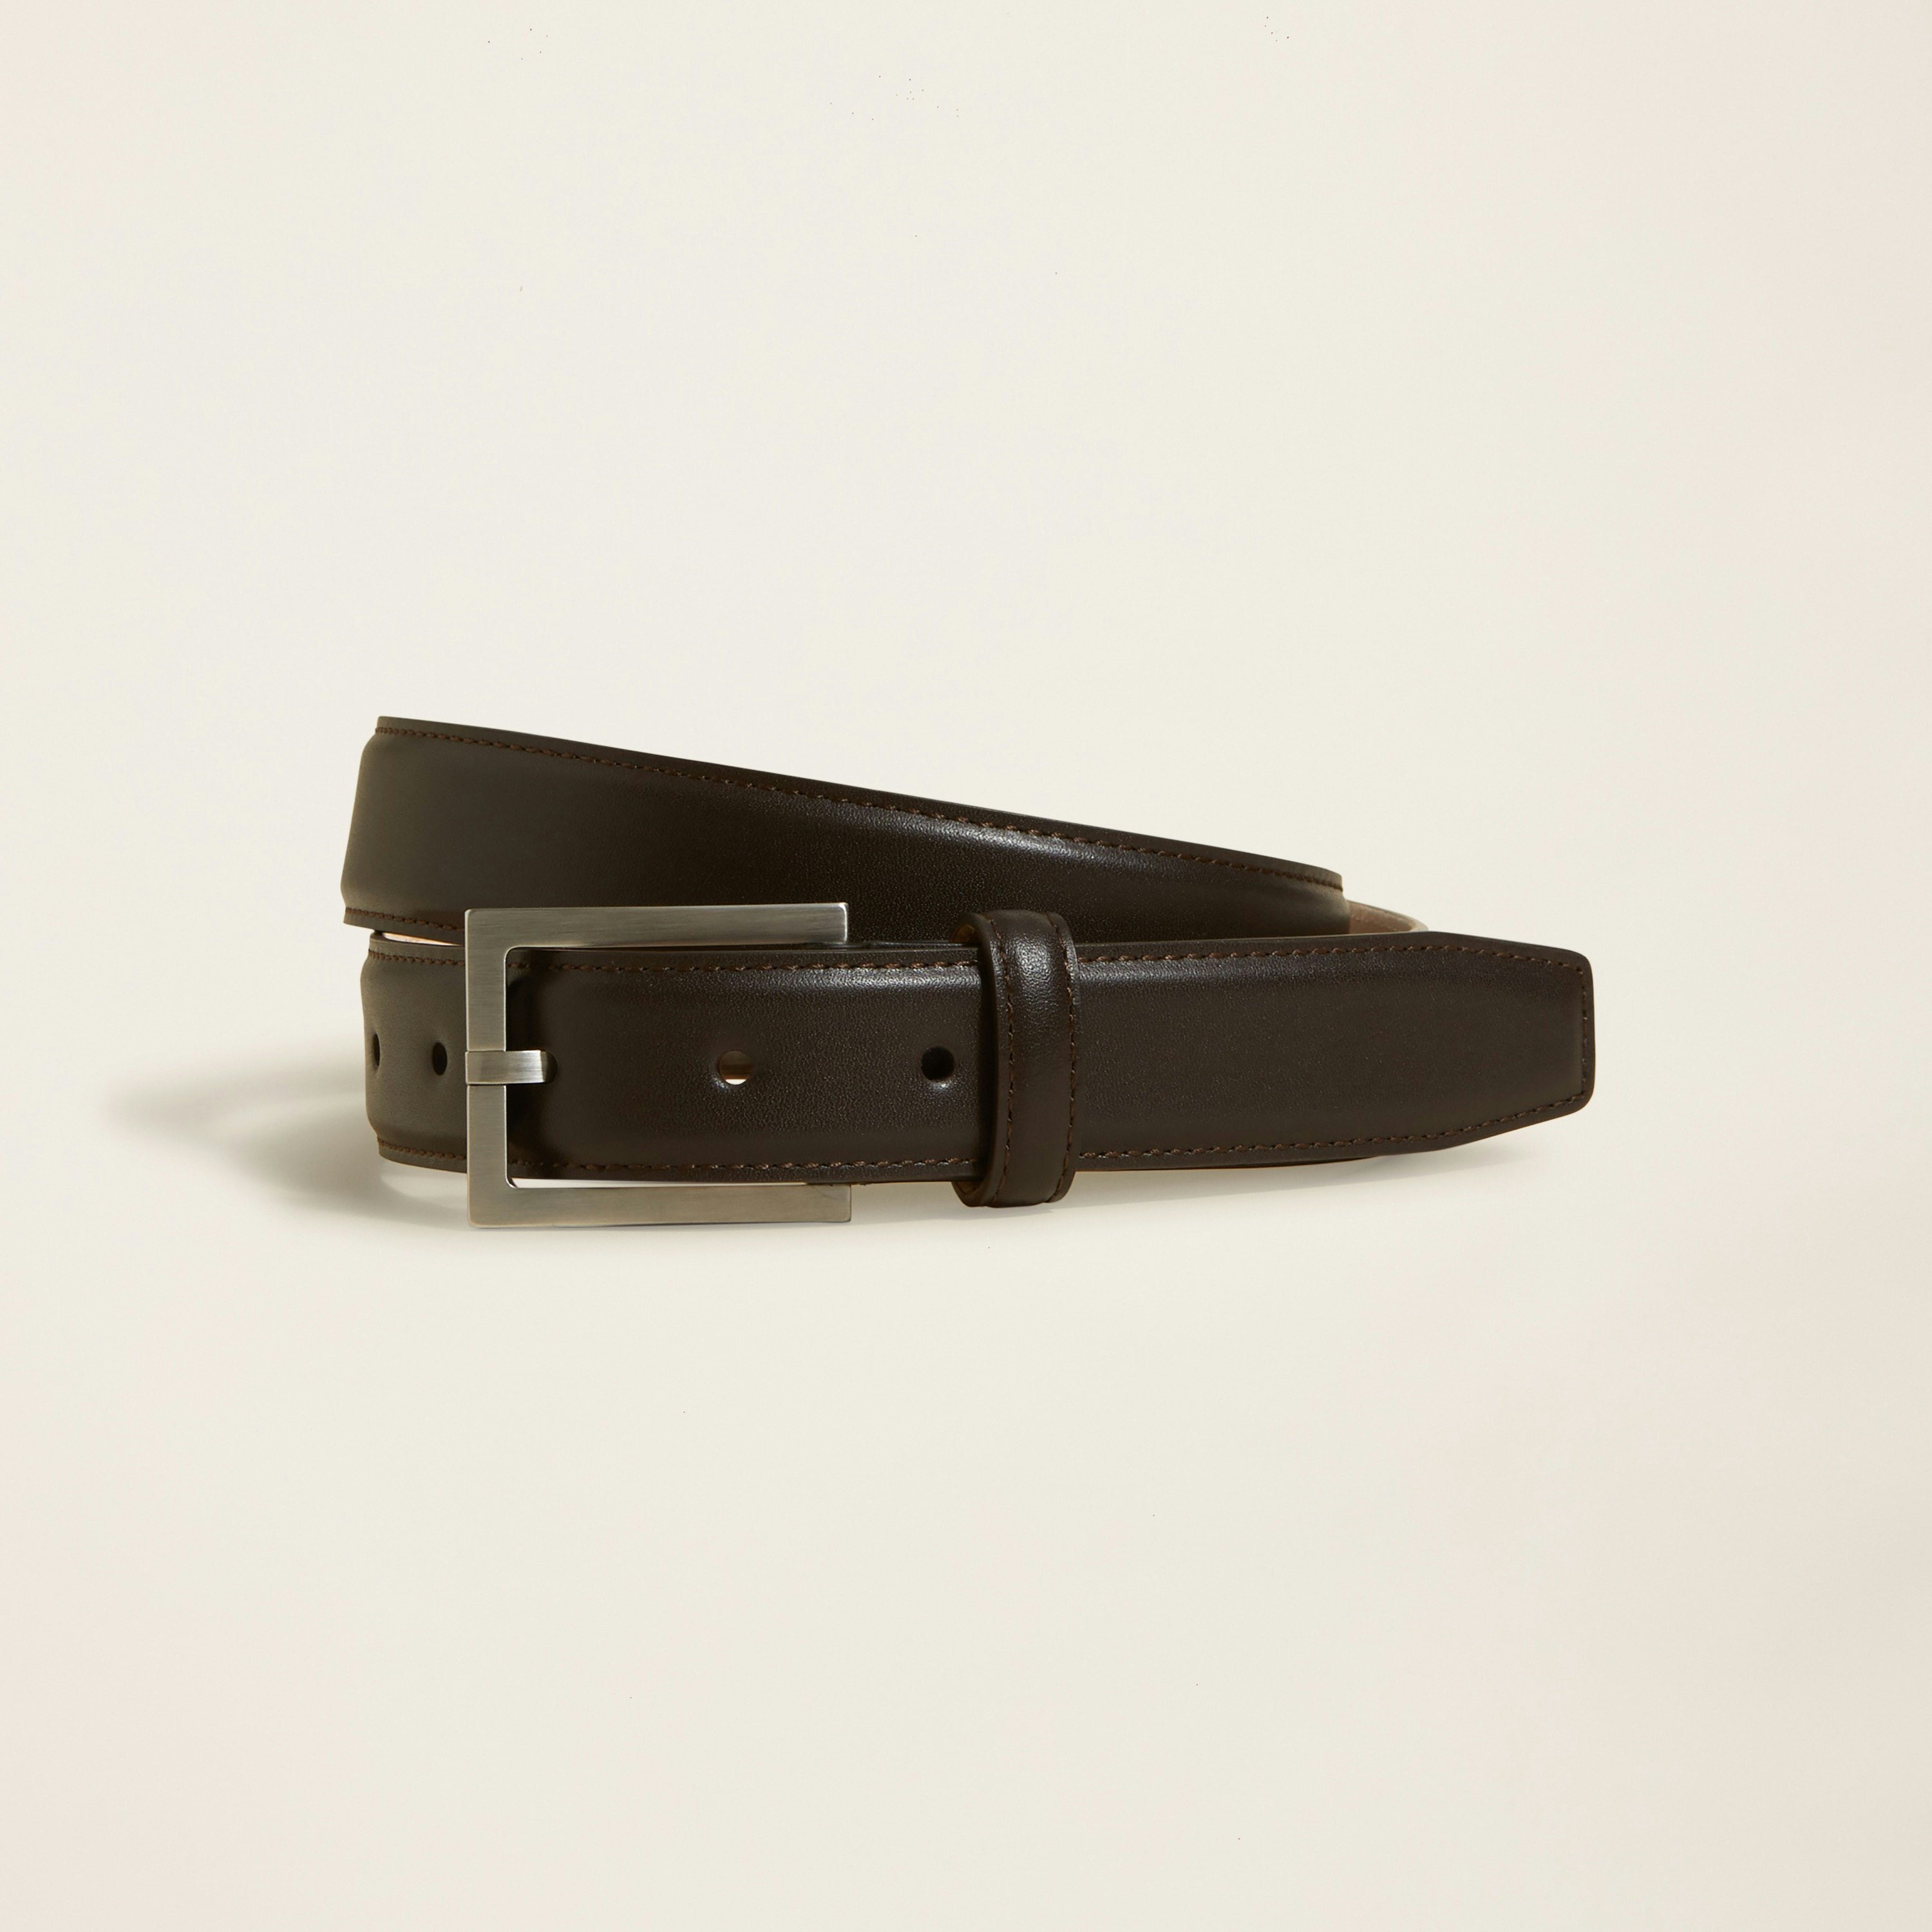 NAPA ECHLIN   Leather Belt   Size S